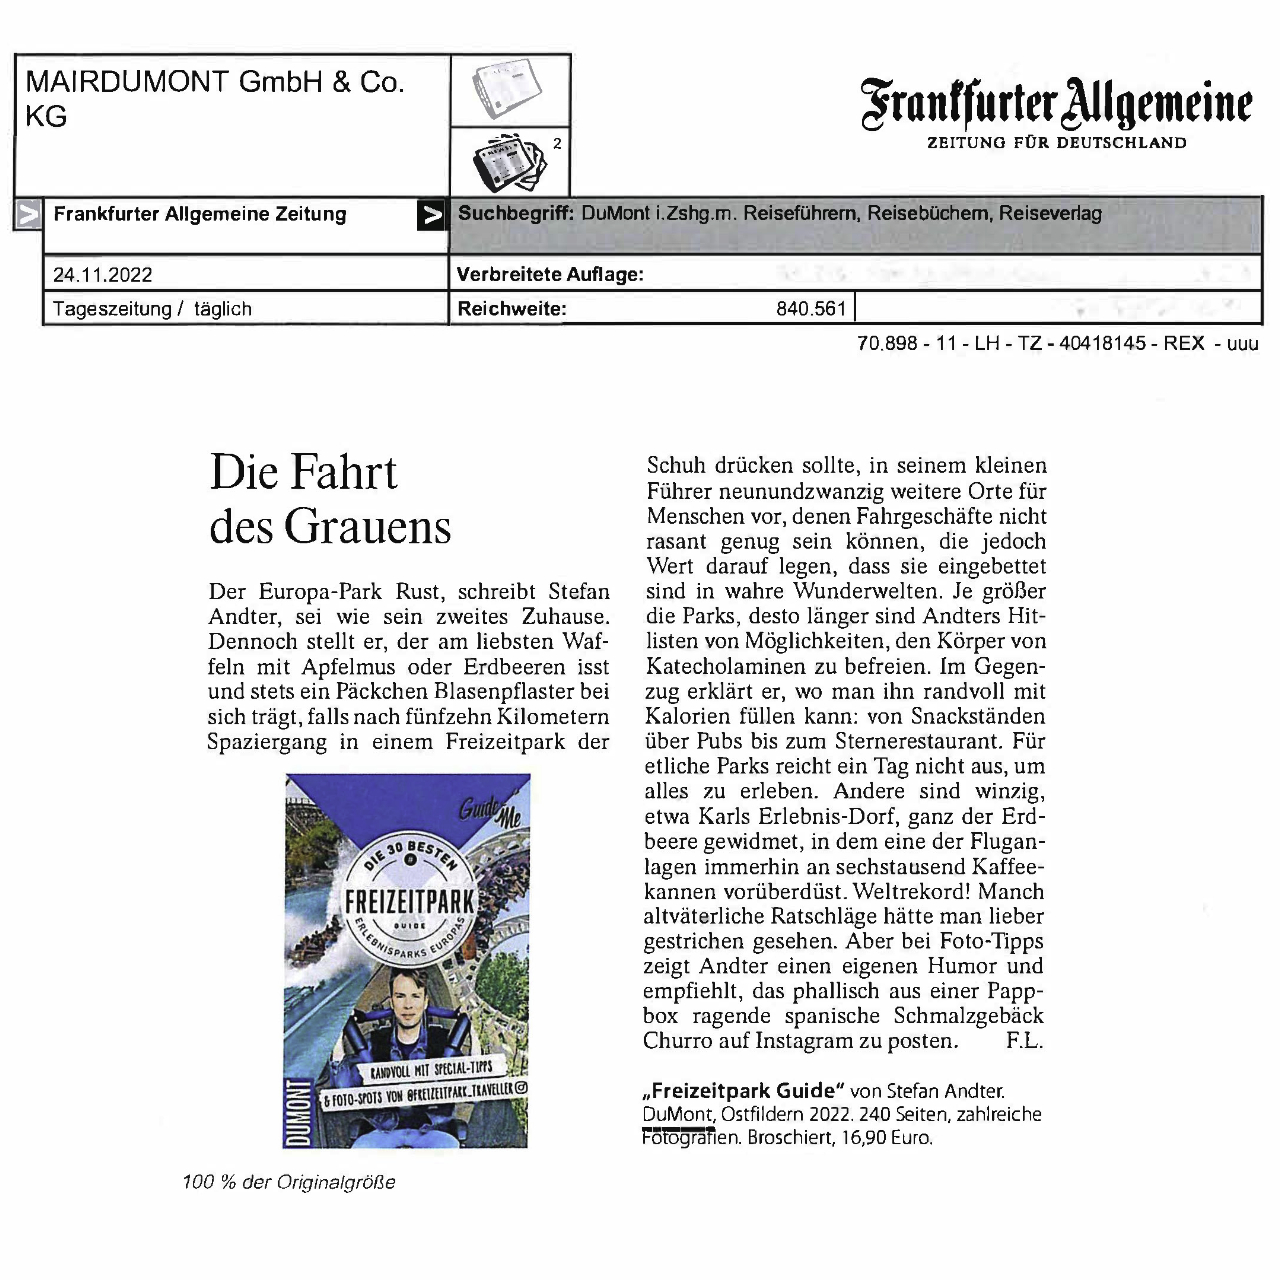 Freizeitpark Guide in der Frankfurter Allgemeine Zeitung